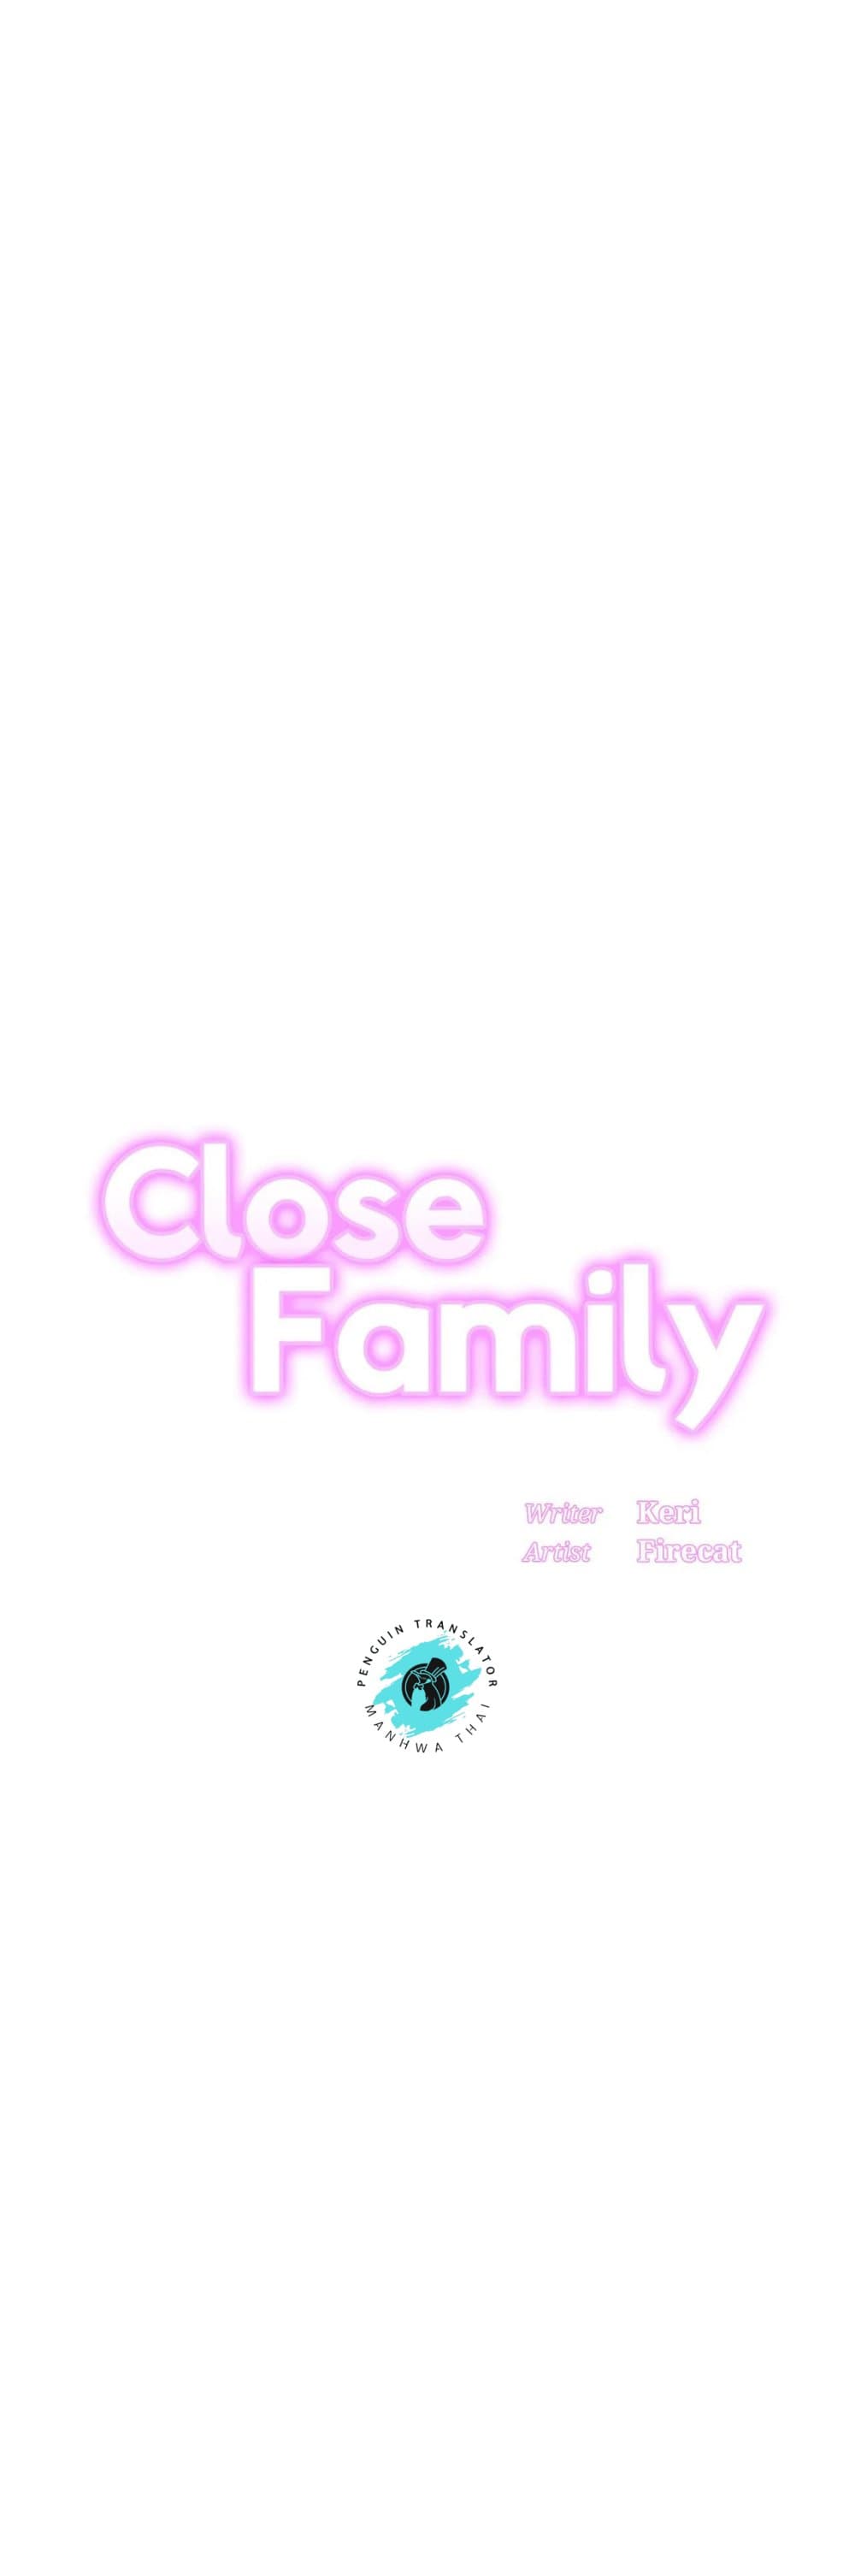 Close Family 54 (1)